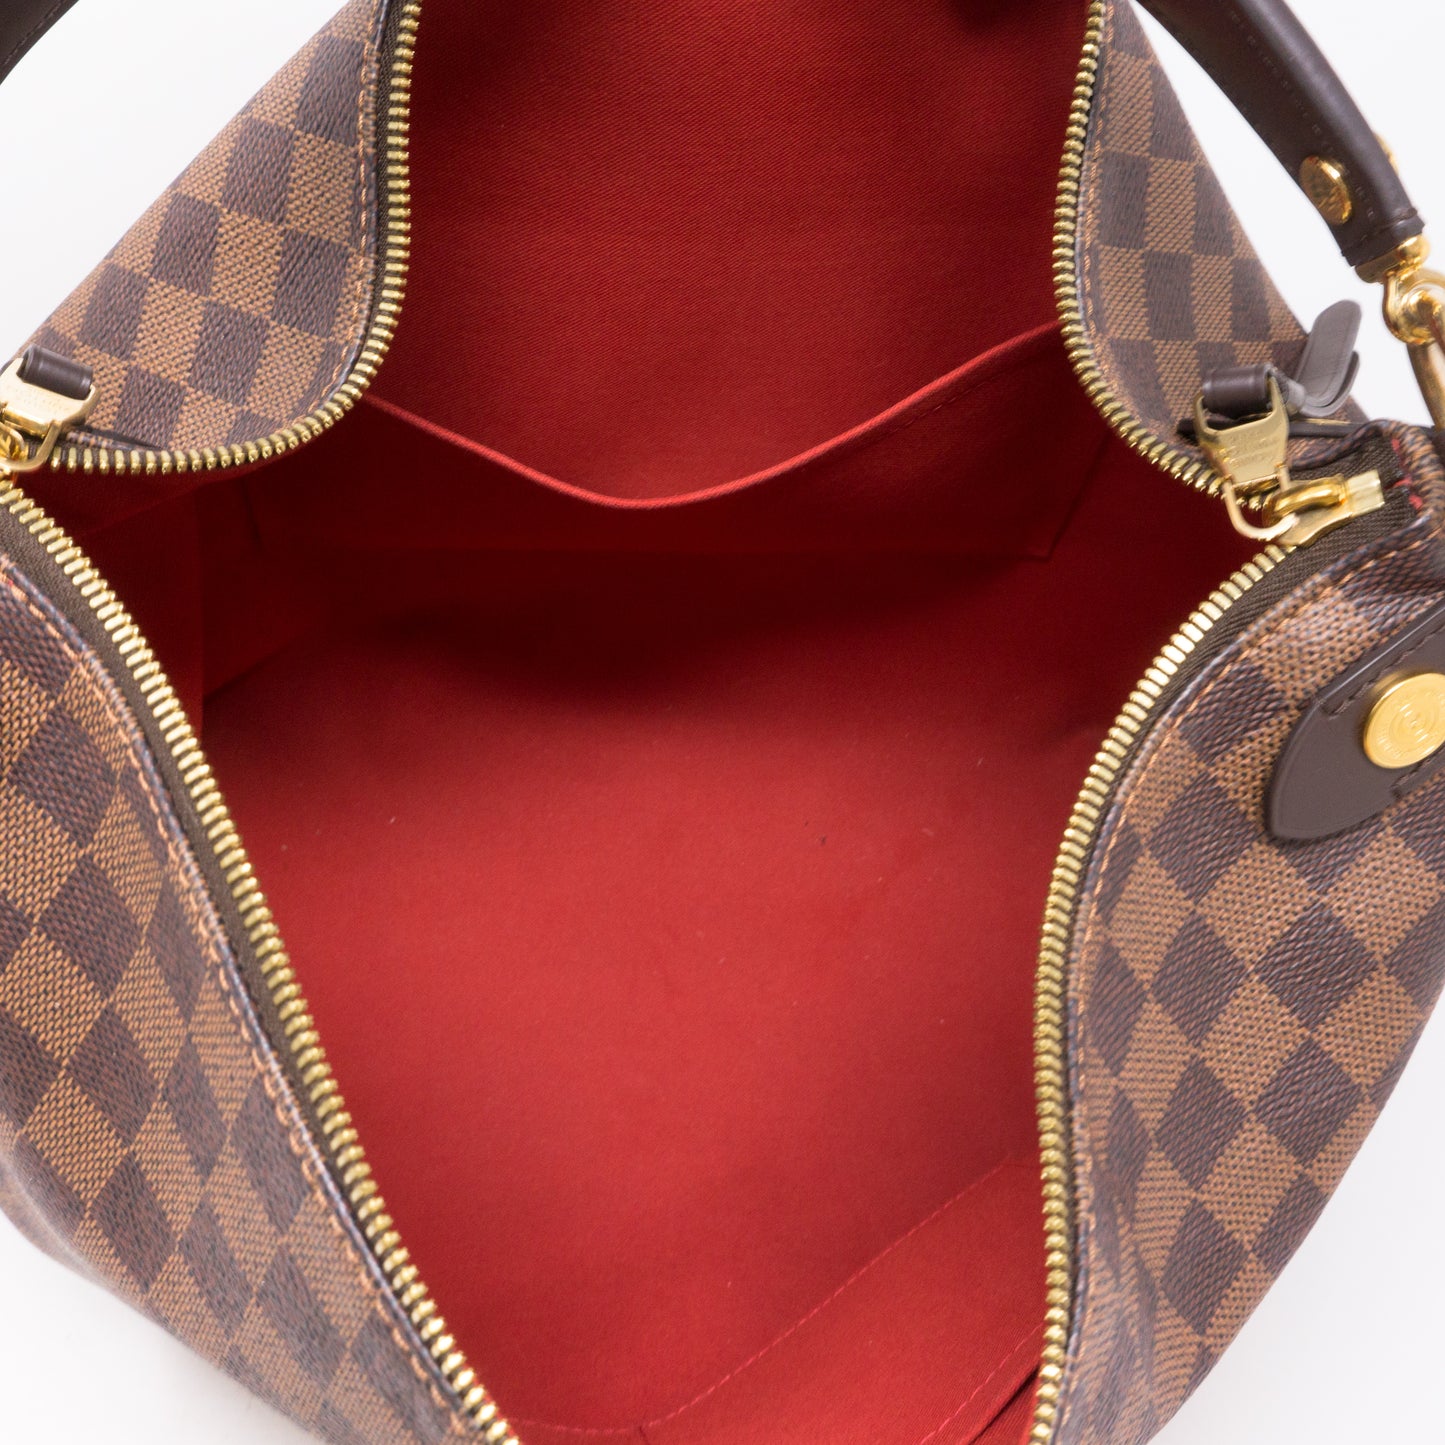 Louis Vuitton Duomo Handbag 383137